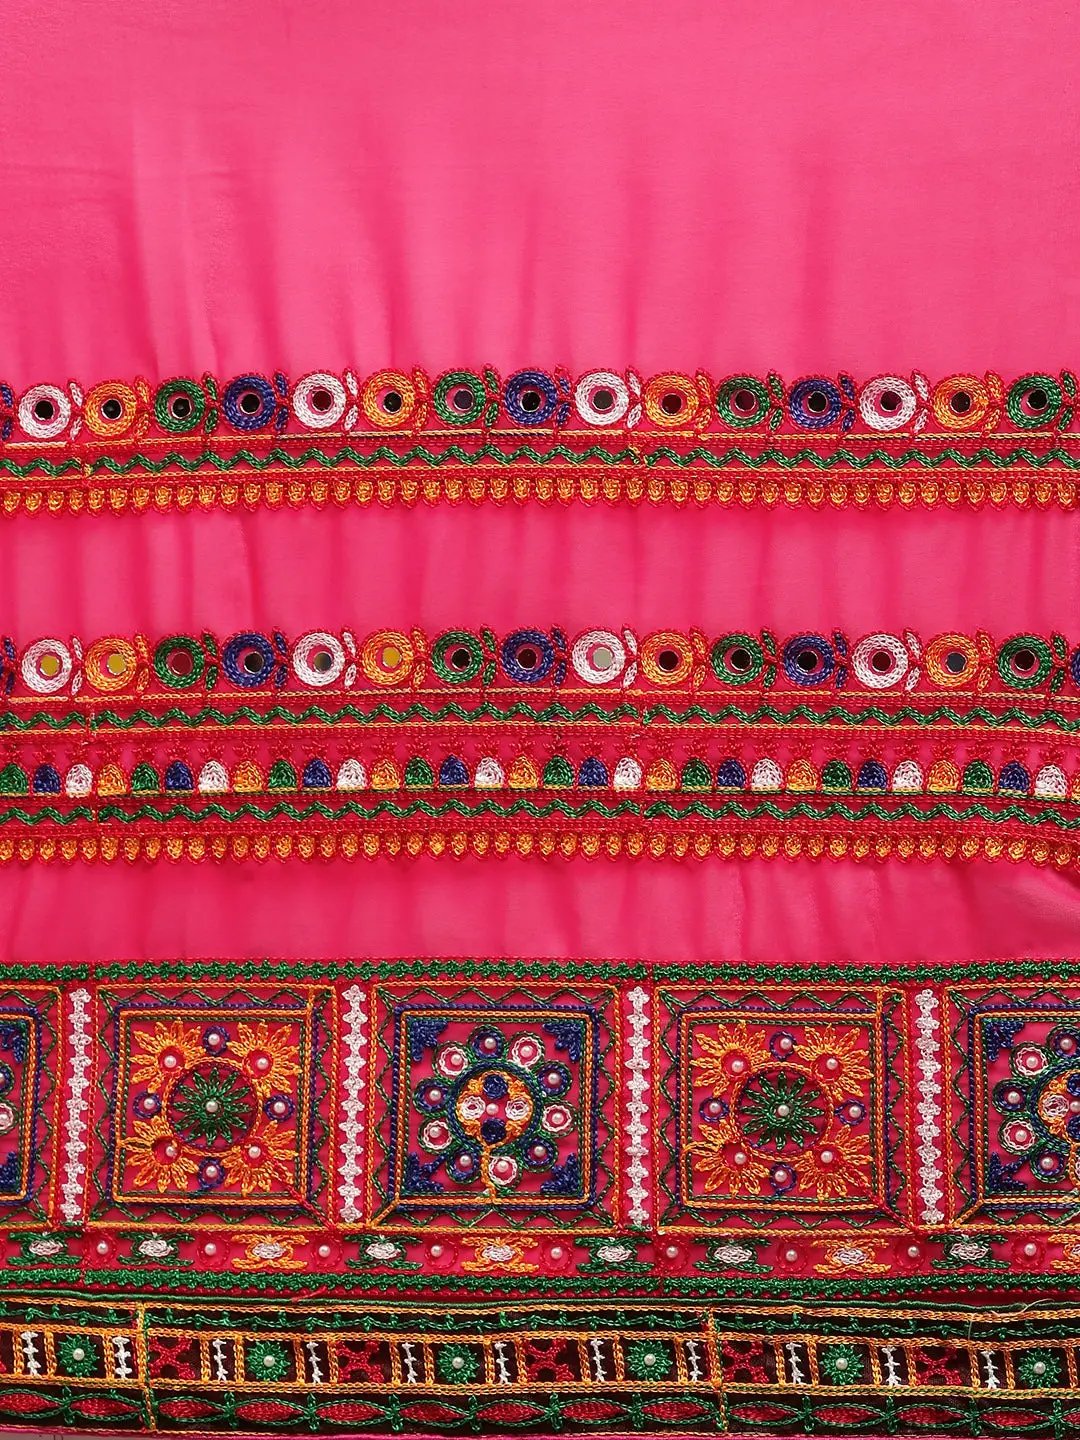  Royal Katchi Embroidery Saree 